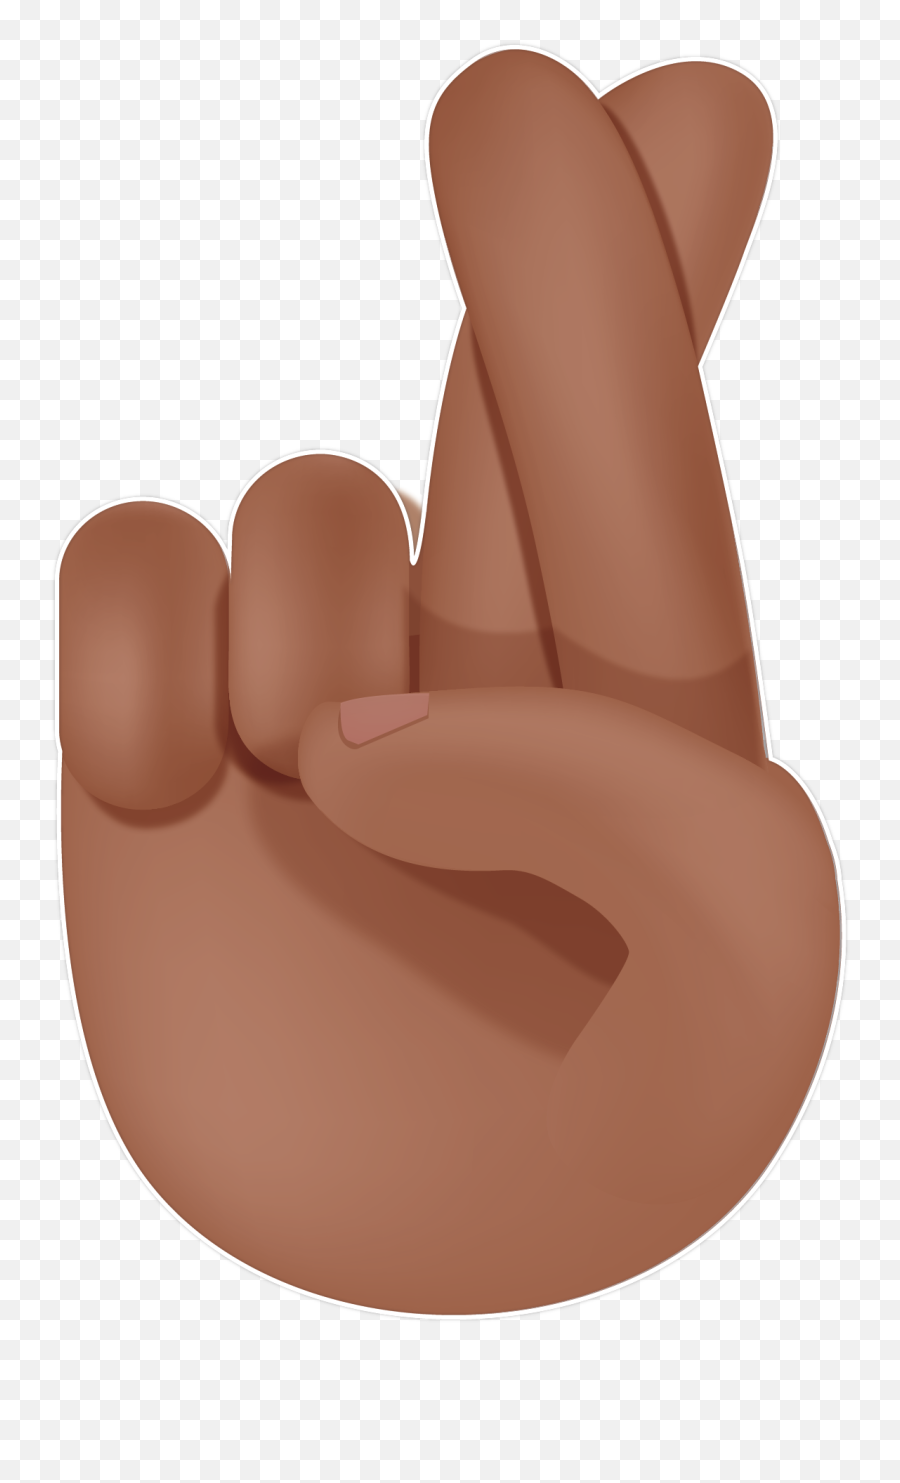 Fingers Crossed Emoji - Fingers Crossed Emoji Gif,Fingers Crossed Emoji